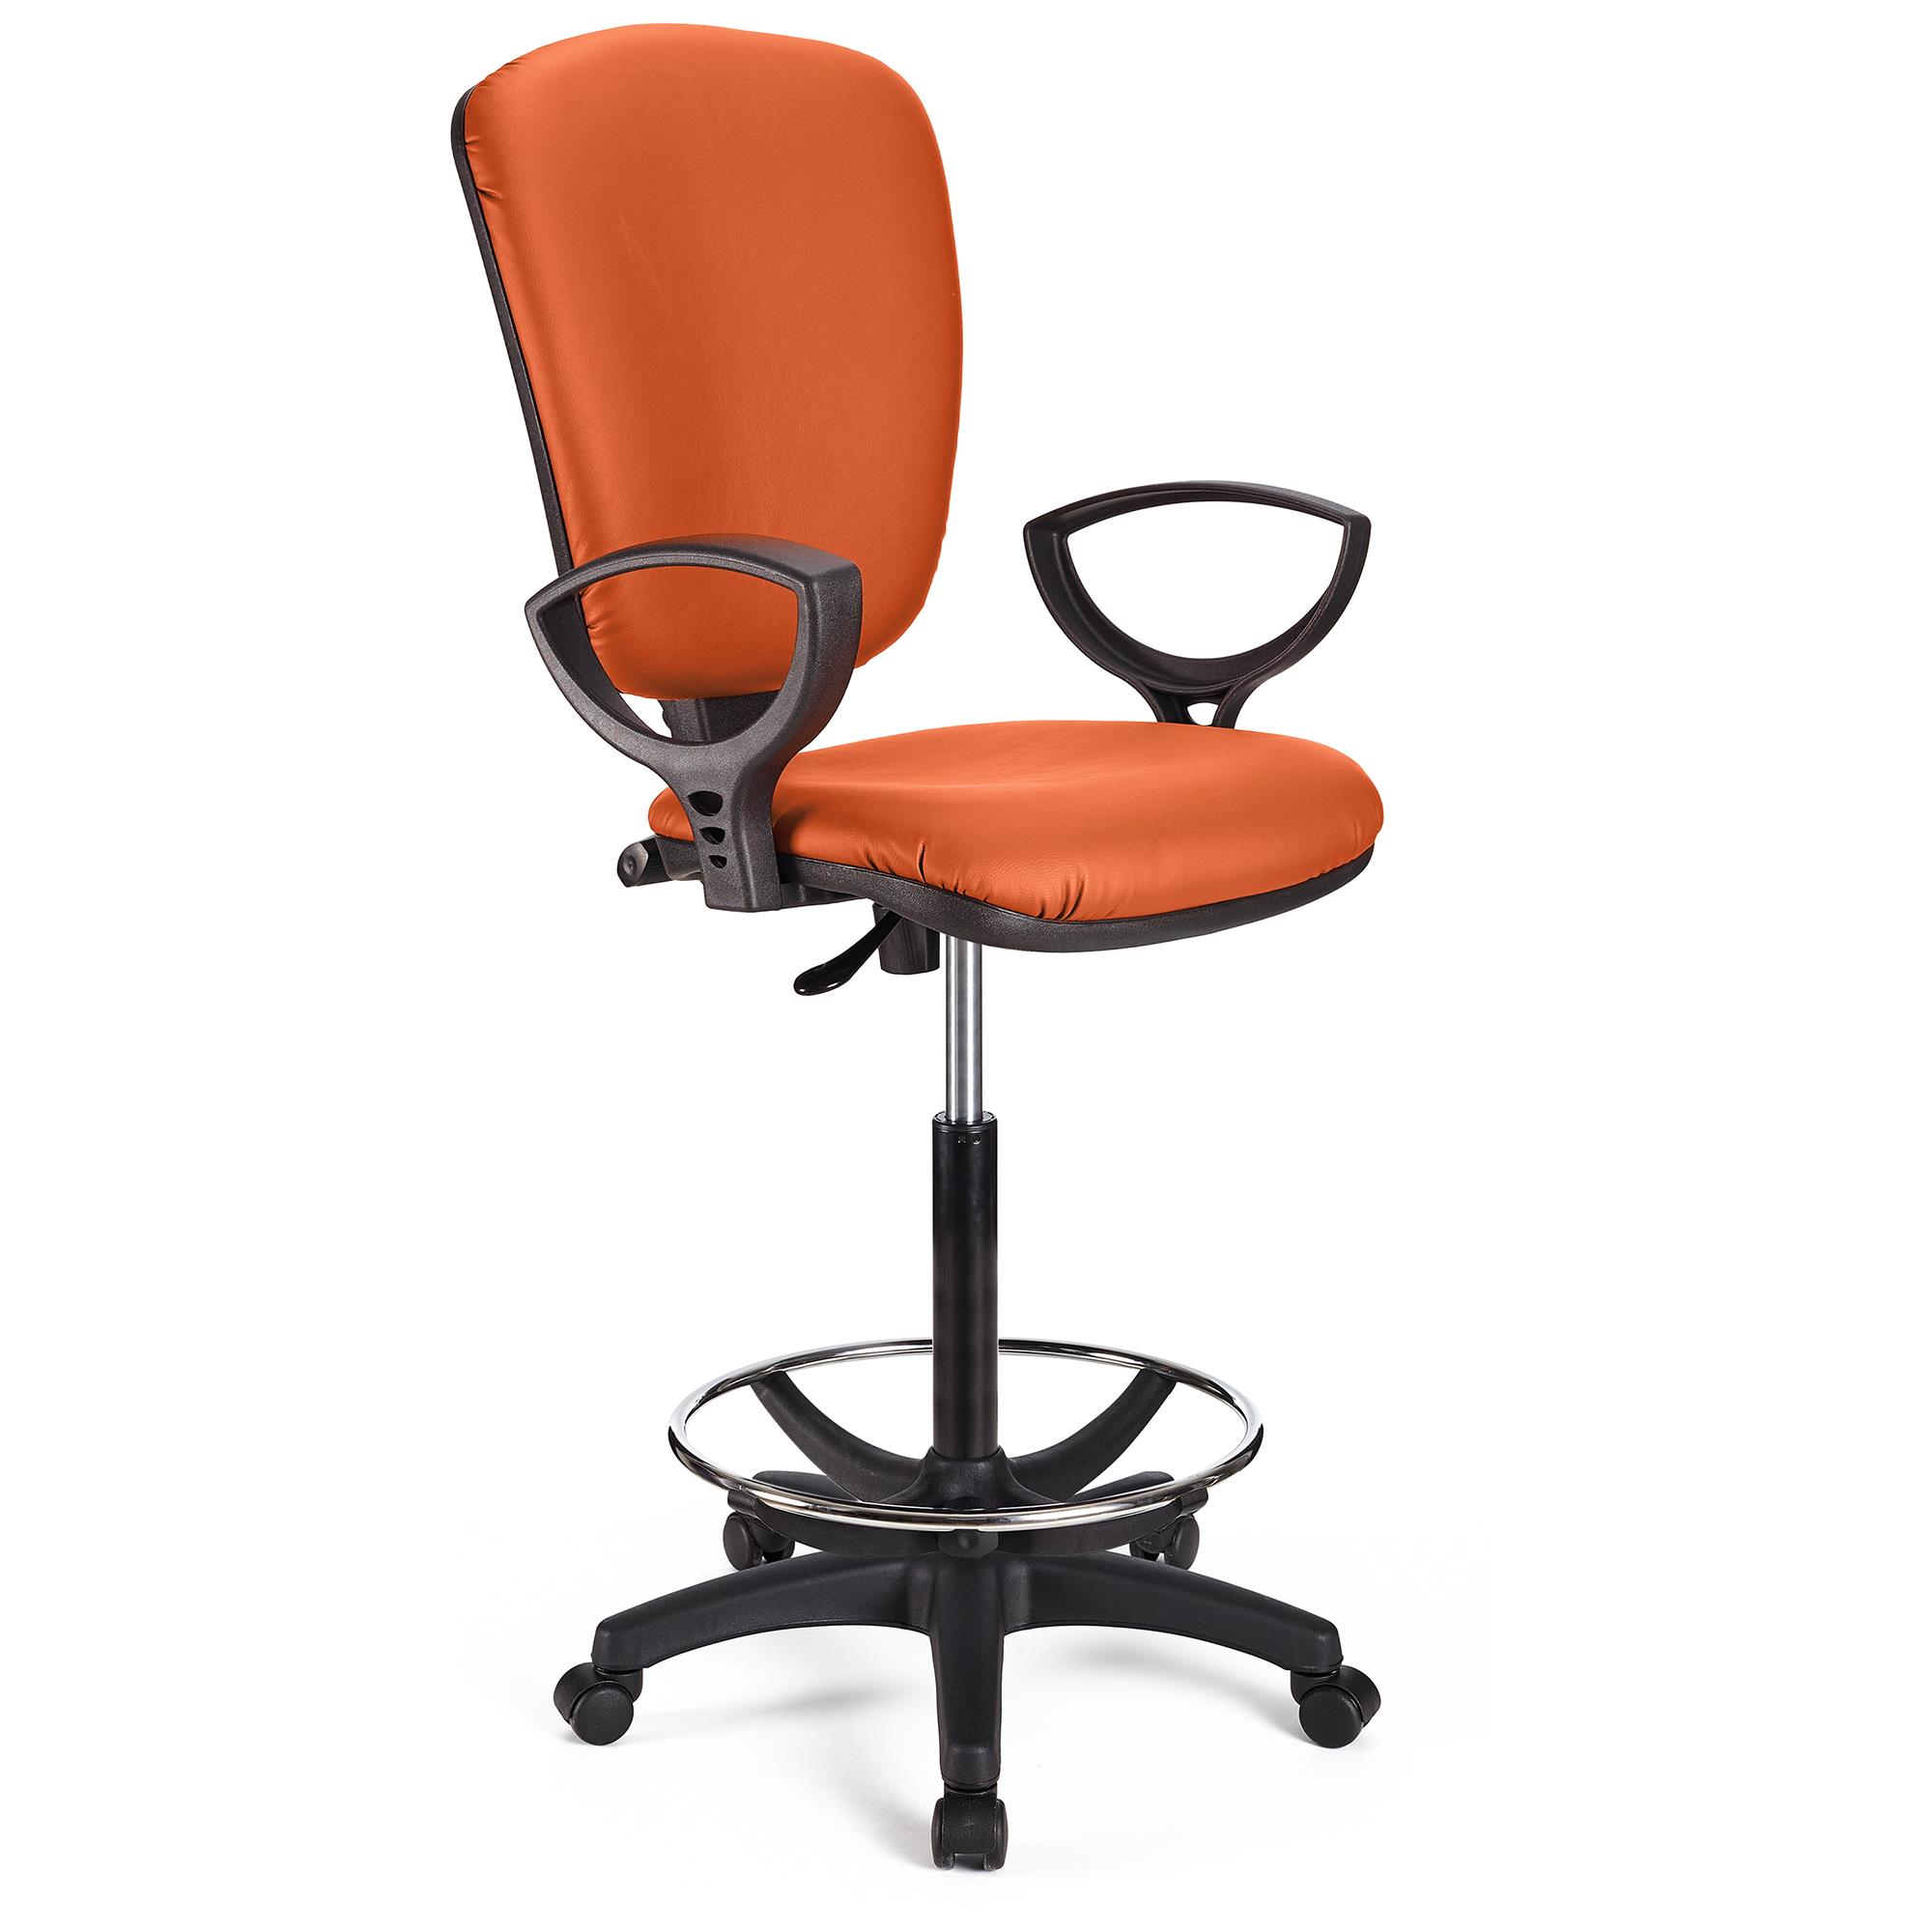 Arbeitshocker KALIPSO LEDER, verstellbare Rückenlehne, dicke Polsterung, Farbe Orange